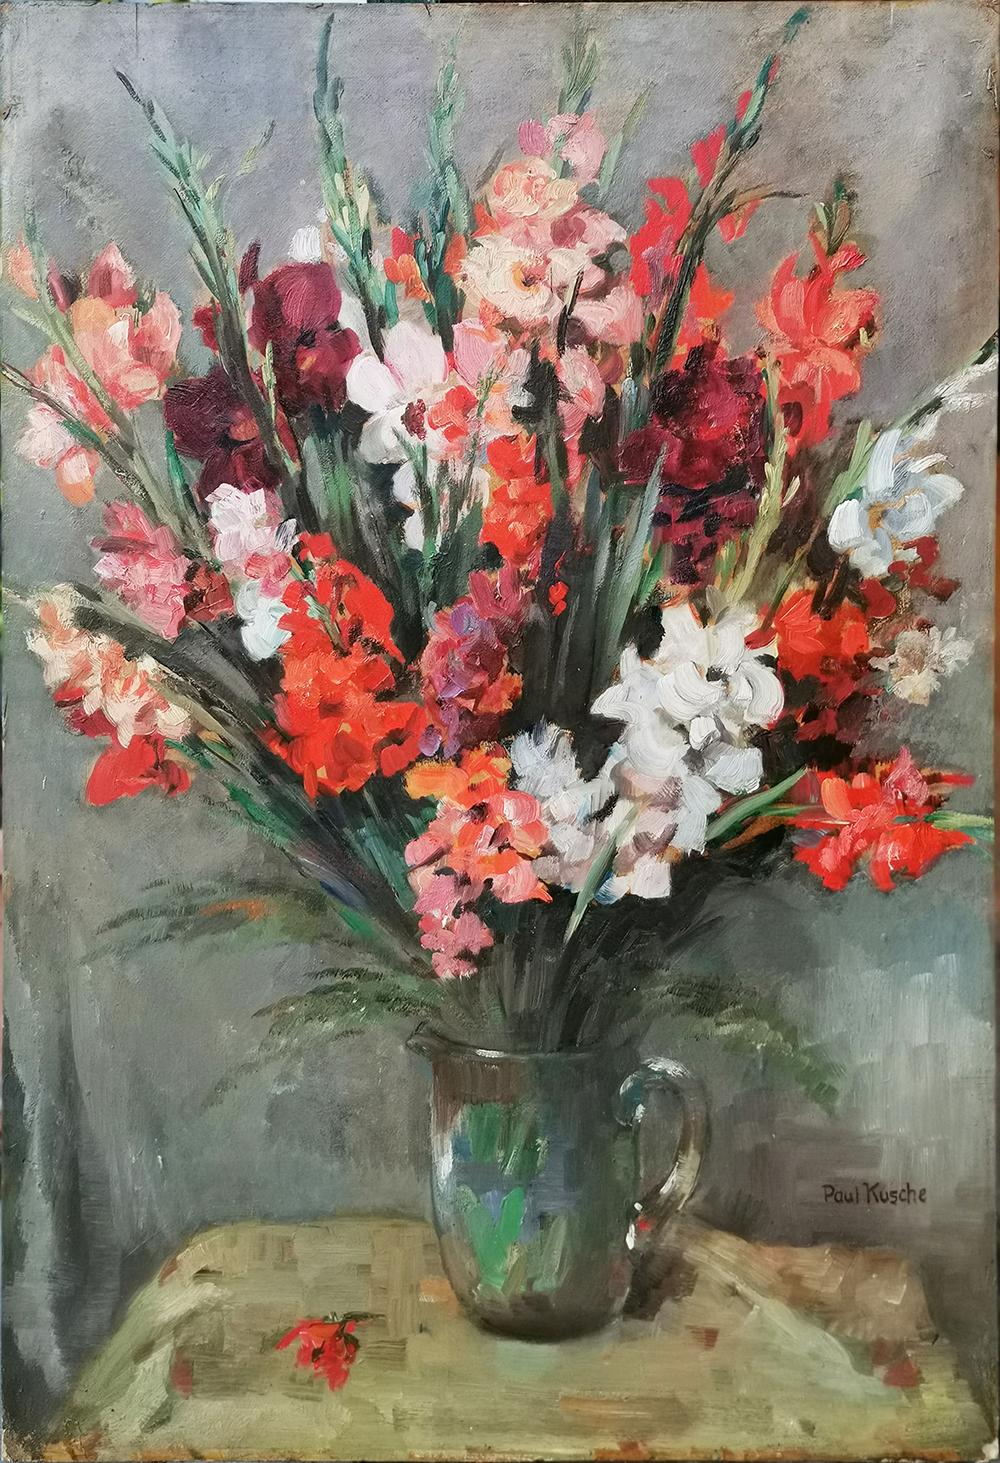 Kusche, Paul (1882-1952), vase à fleurs avec glaïeuls
Mesures :
100 cm x 70 cm (sans cadre)
39,4 po x 27,6 po (sans cadre)
huile sur carton, 1920

Peinture ancienne représentant une composition florale avec des glaïeuls rouges, roses et